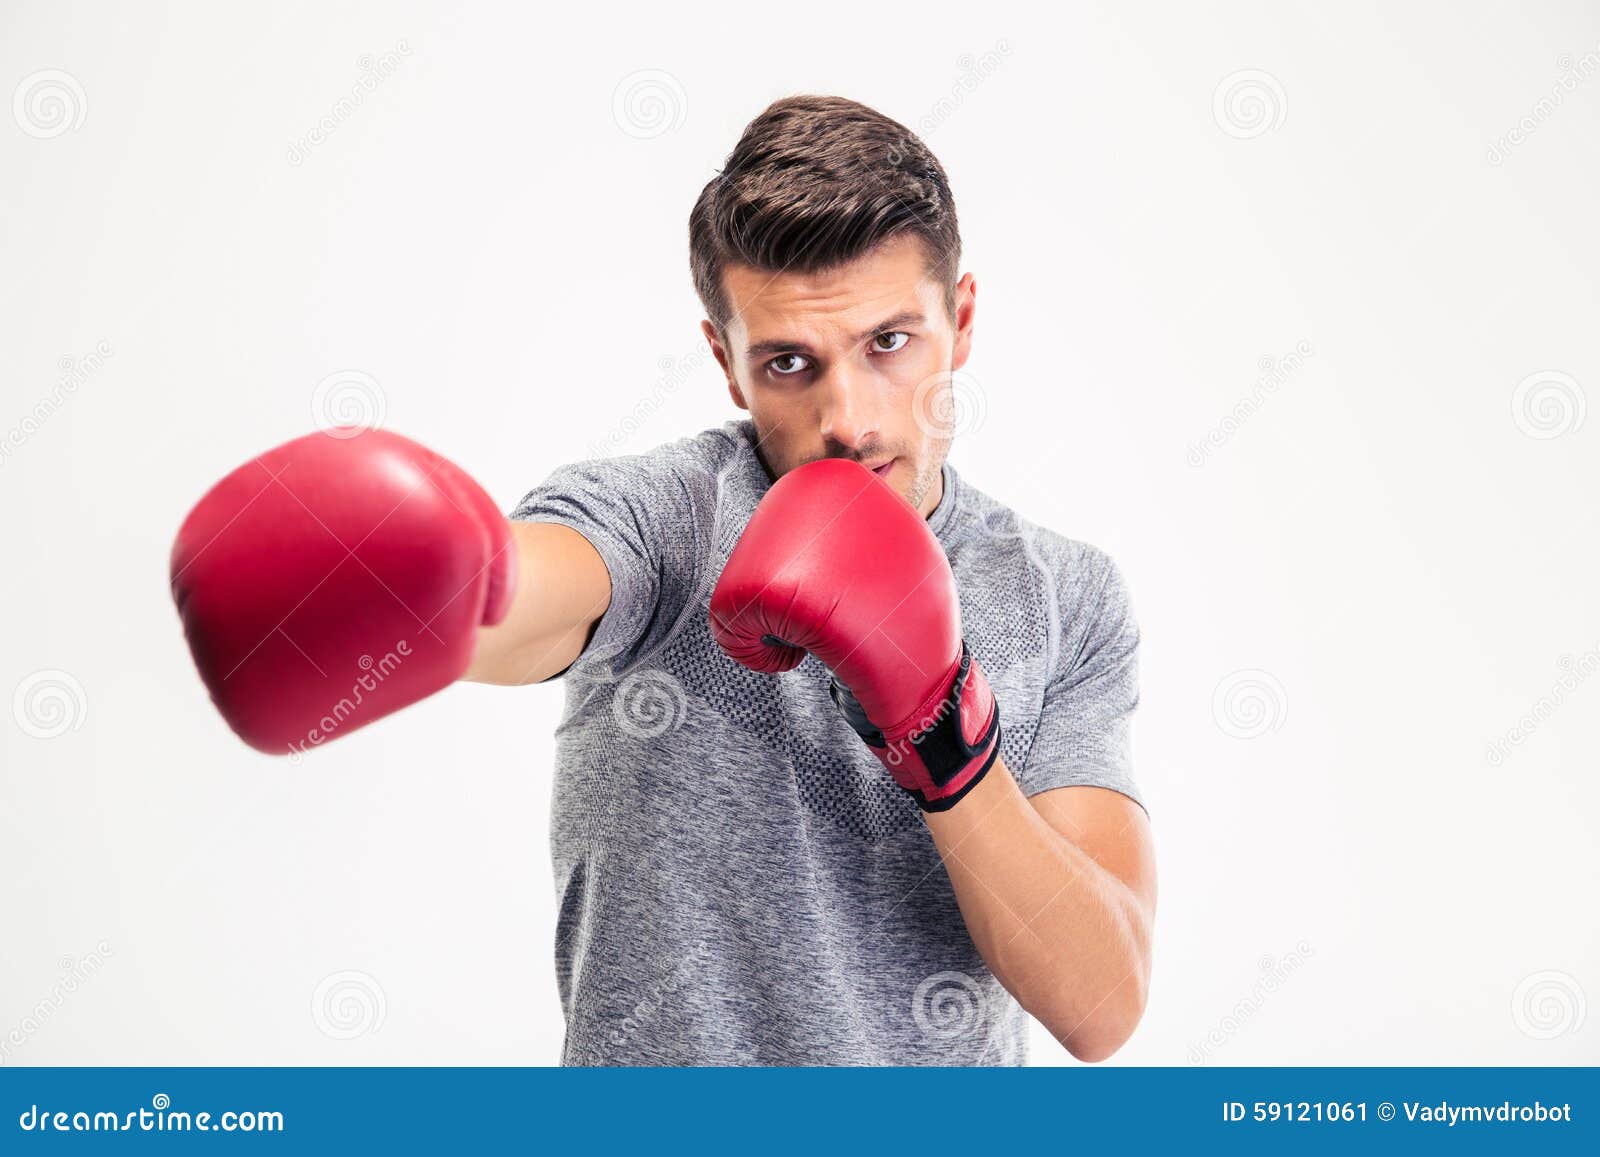 Раздумал быть боксером. Мужчина в боксерских перчатках. Удар боксерской перчаткой. Удар в боксерских перчатках. Парни в боксерах.